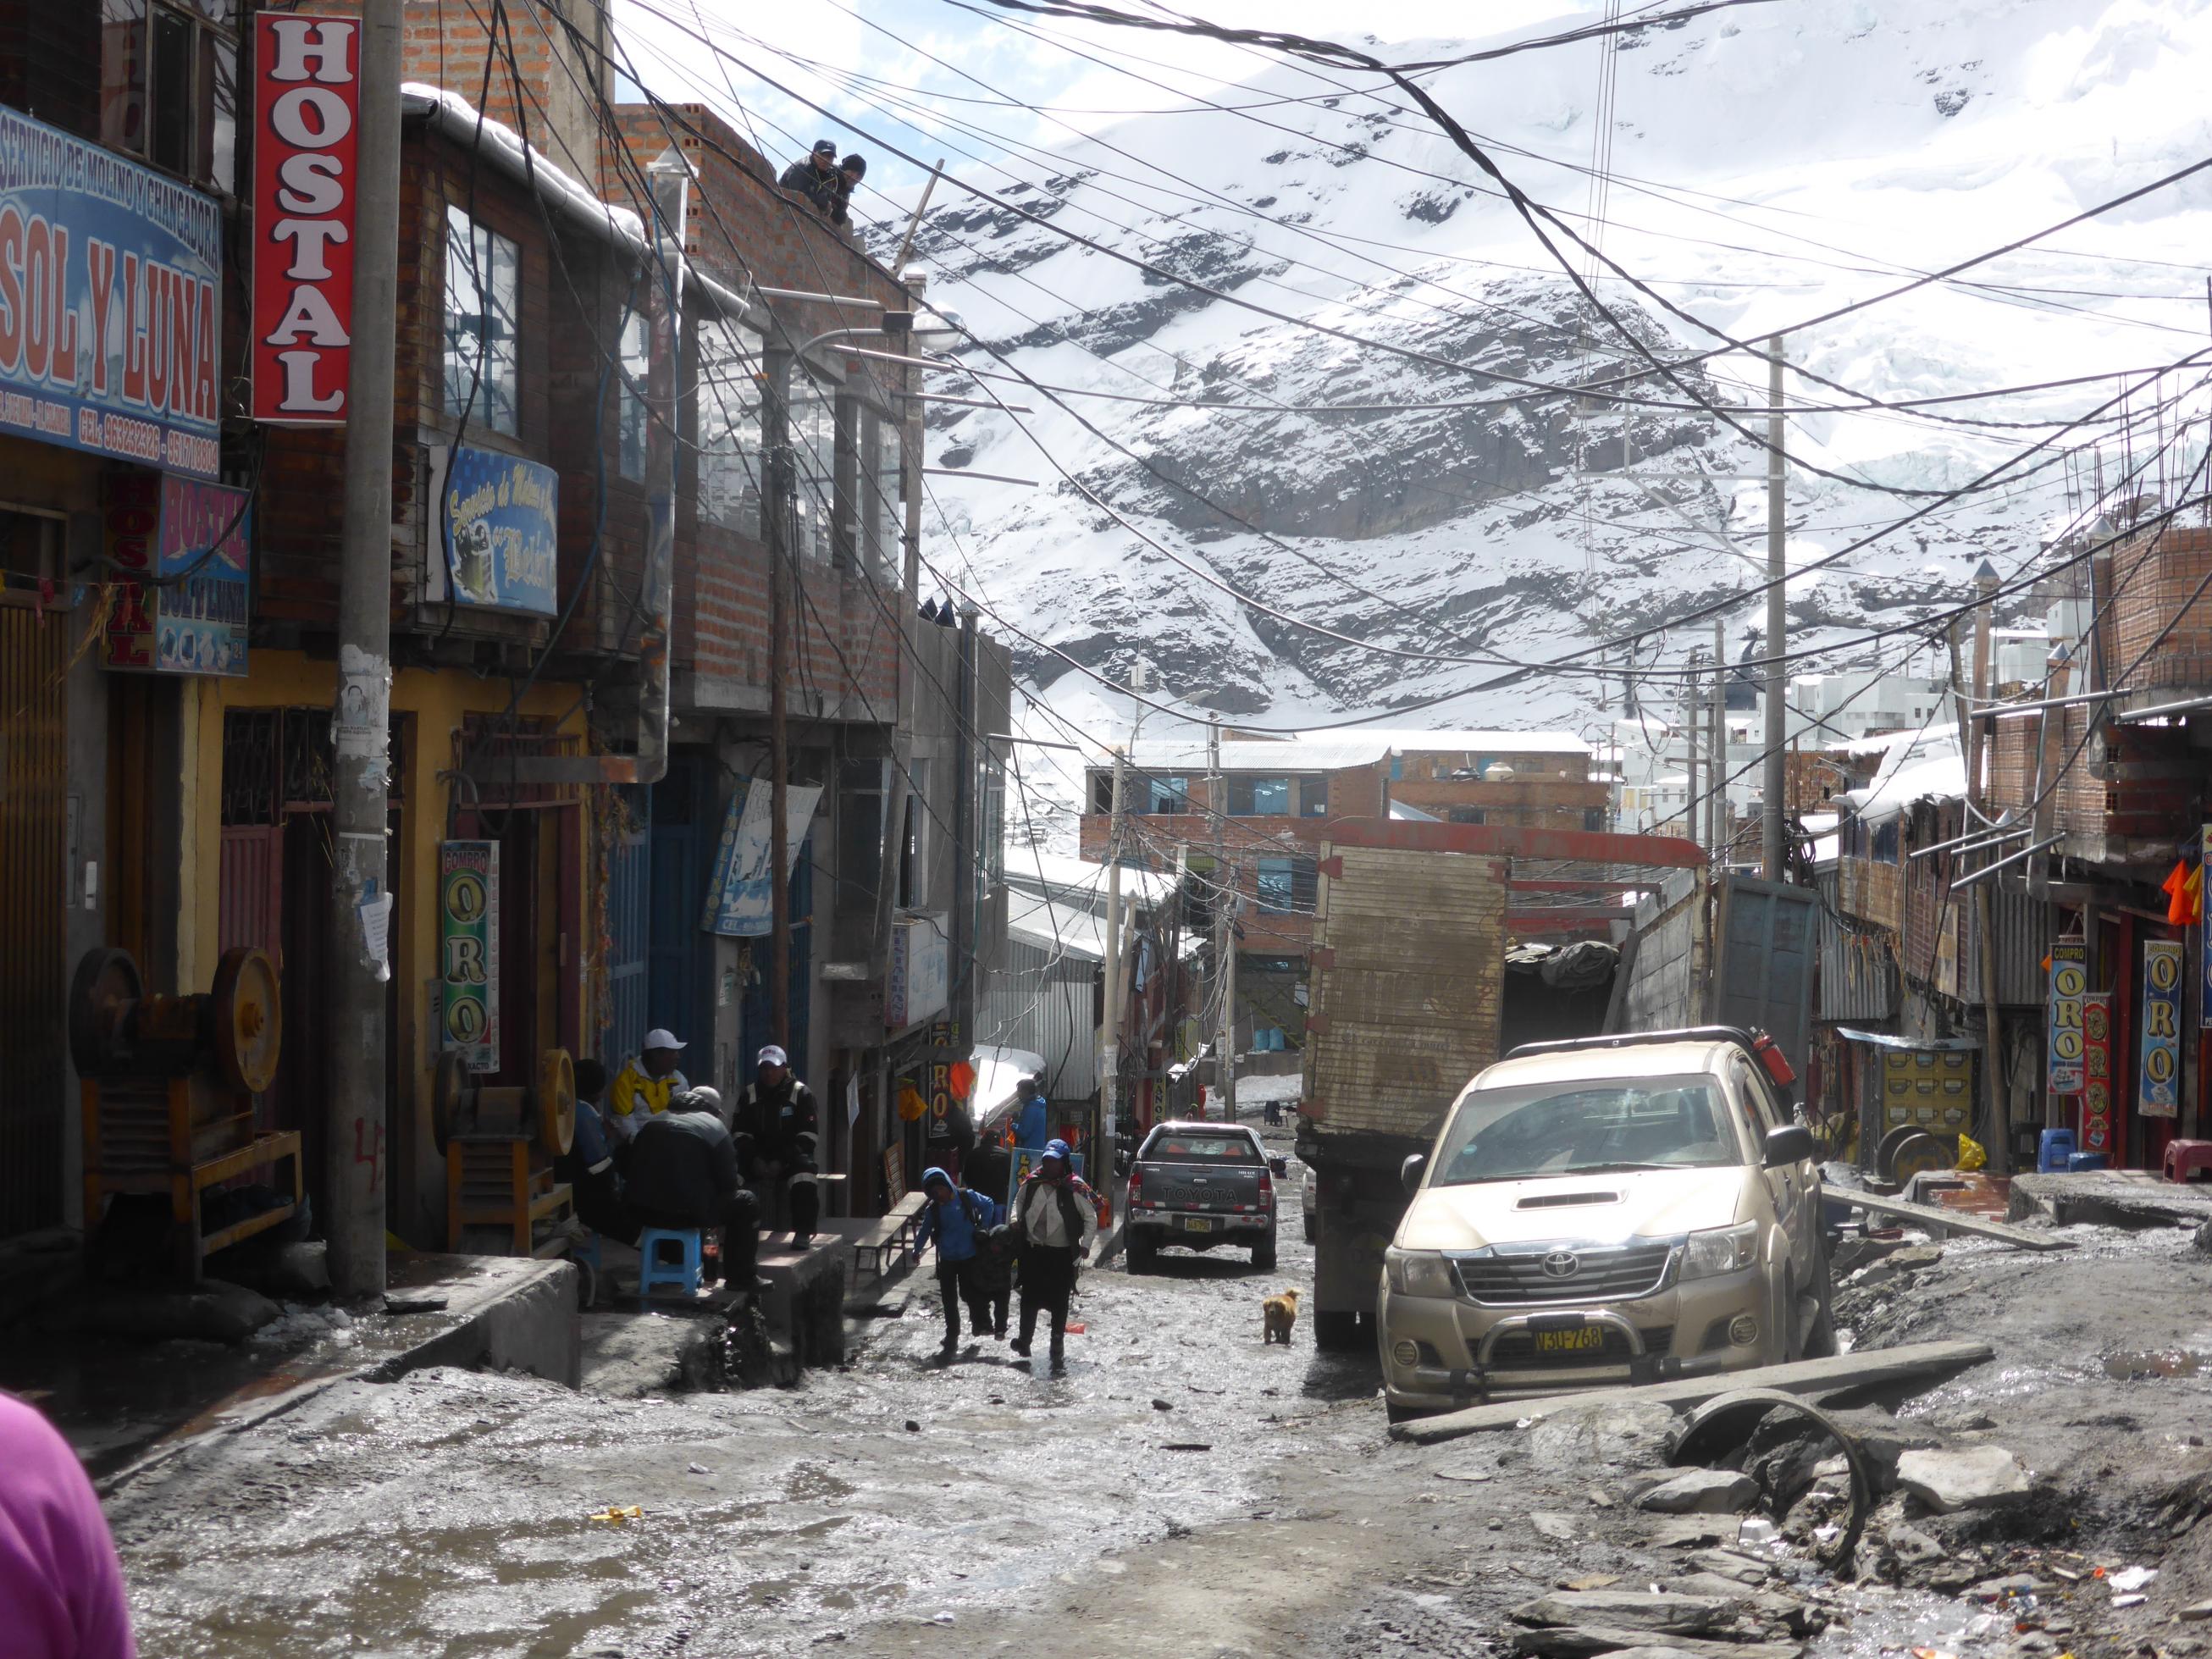 Abschüssige Strasse gesäumt von Geschäftshäusern, im Hintergrund schneebedecktes Gebirge, man sieht auf der Strasse Menschen in Anoraks und Bergbaukleidung